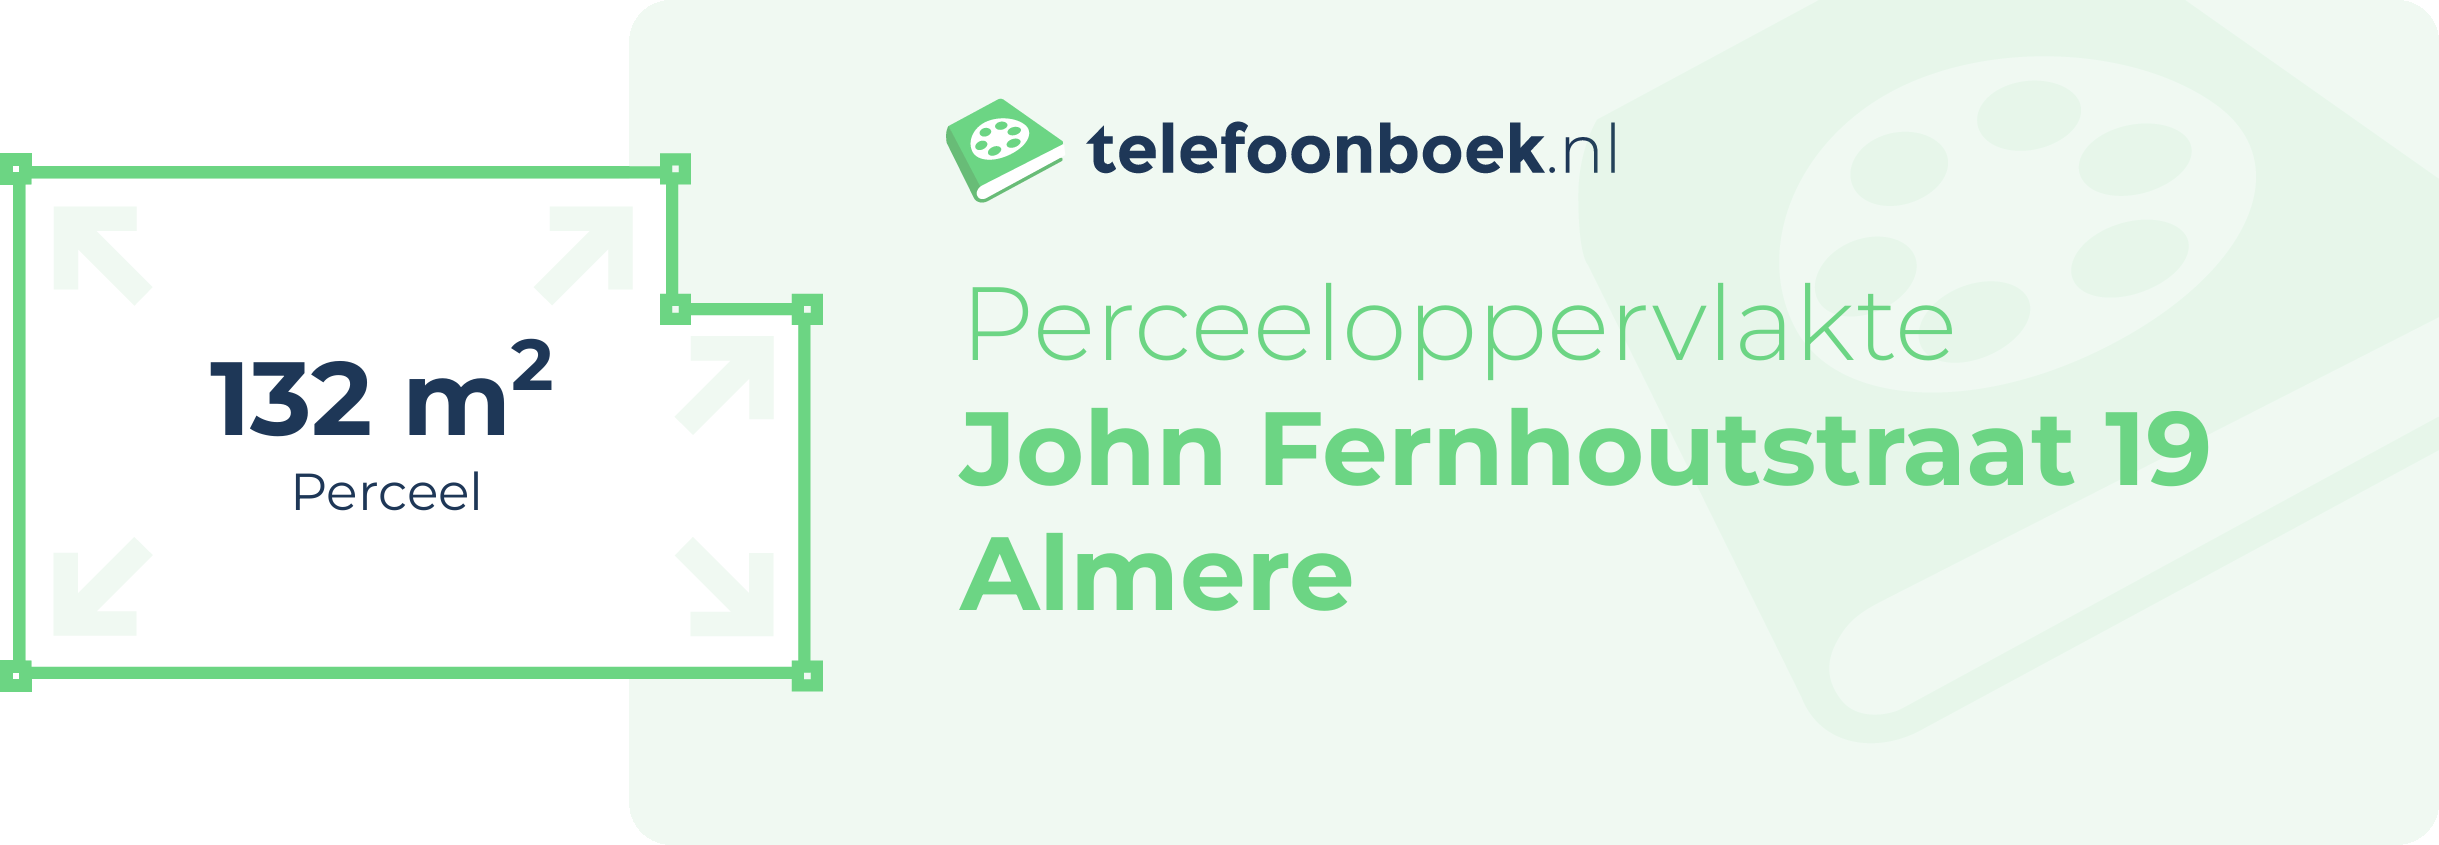 Perceeloppervlakte John Fernhoutstraat 19 Almere